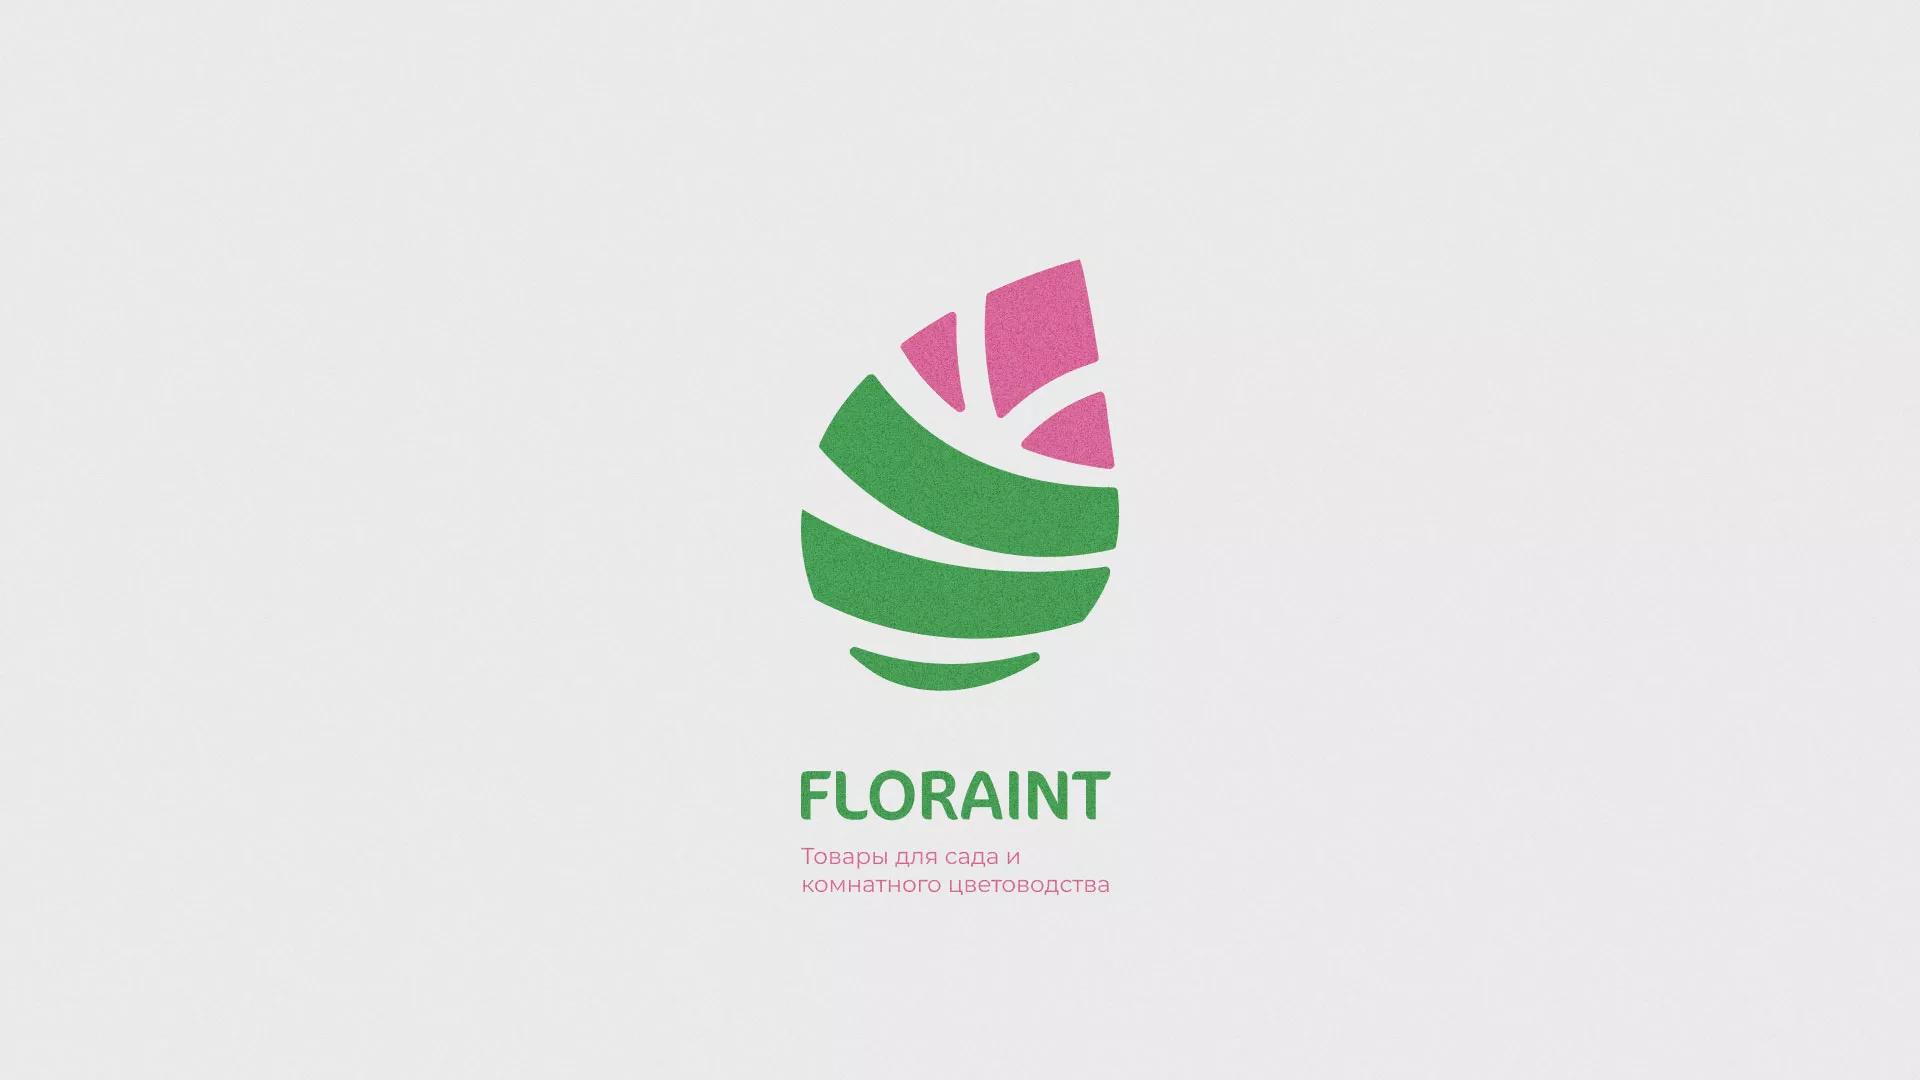 Разработка оформления профиля Instagram для магазина «Floraint» в Щиграх